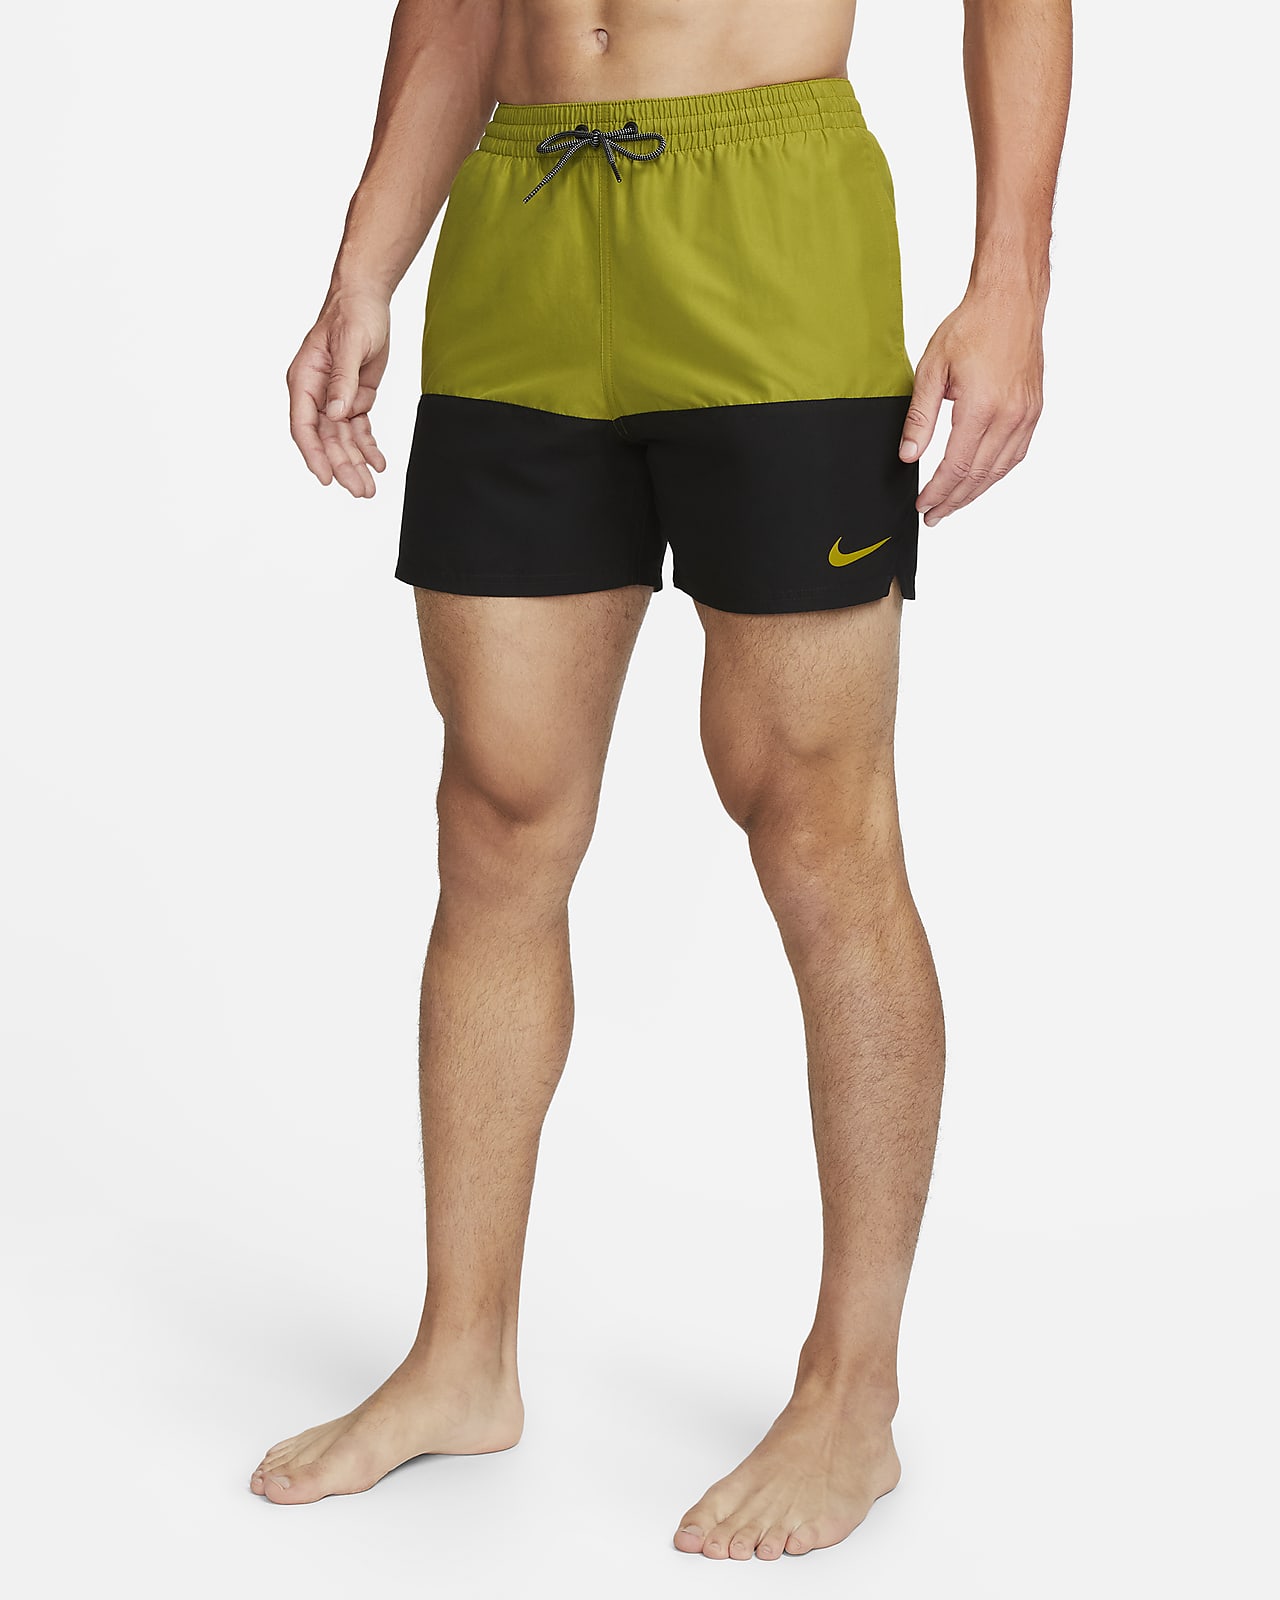 Nike Split-badebukser (13 cm) til mænd